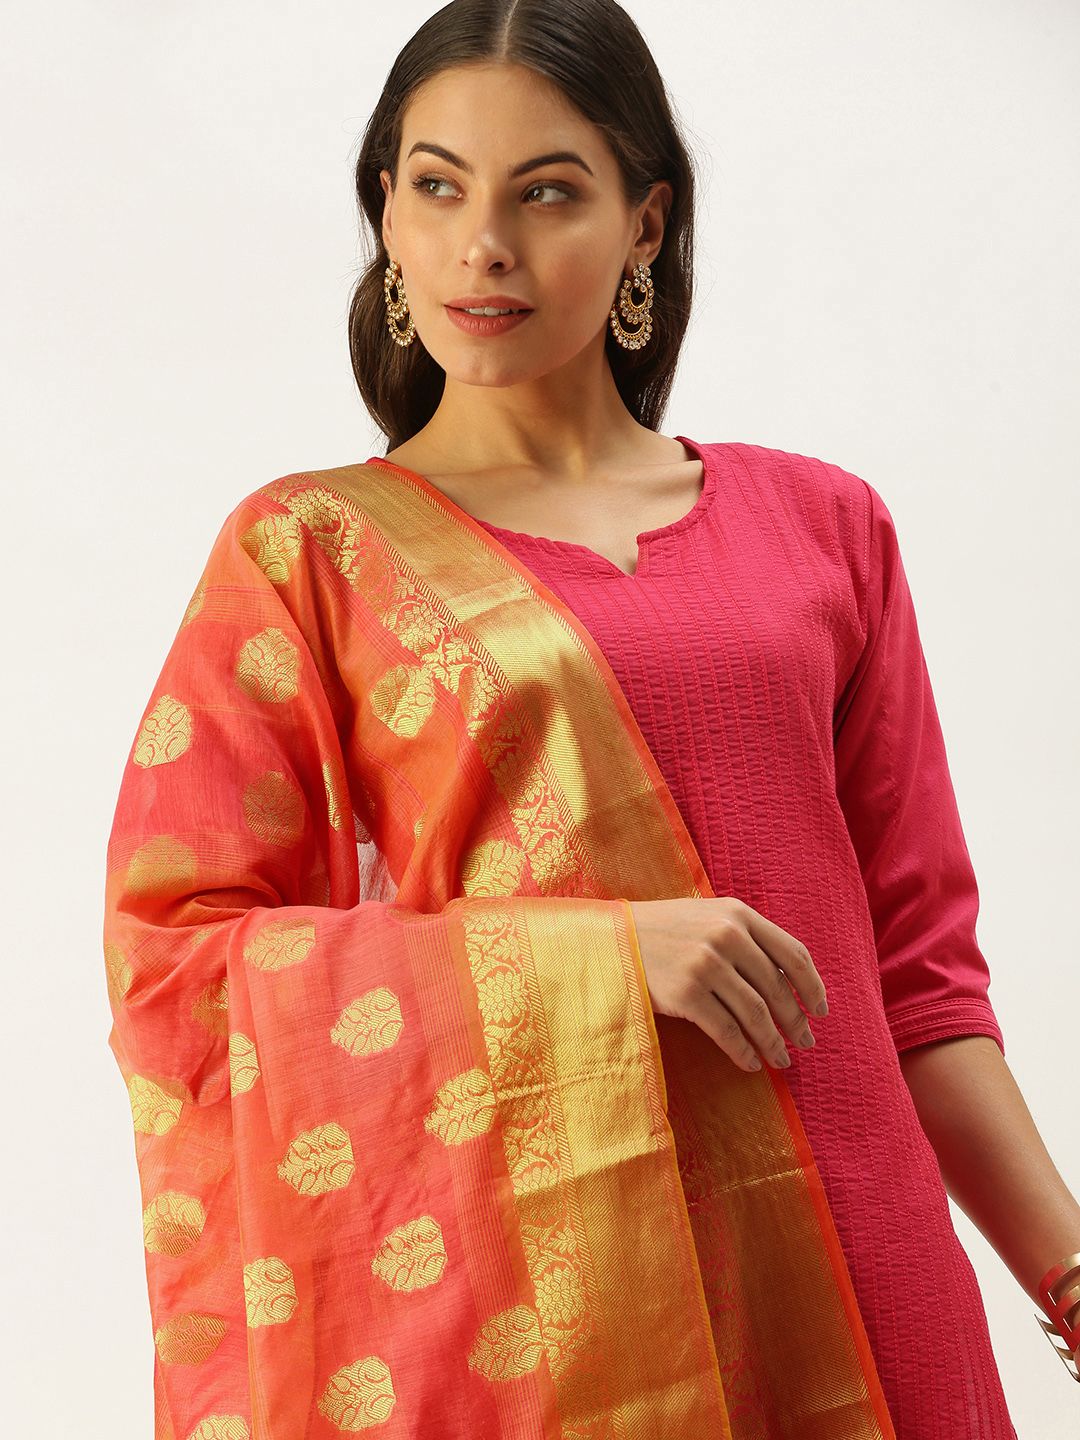 SWAGG INDIA Peach-Coloured Ethnic Motifs Woven Design Art Silk Dupatta with Zari Price in India